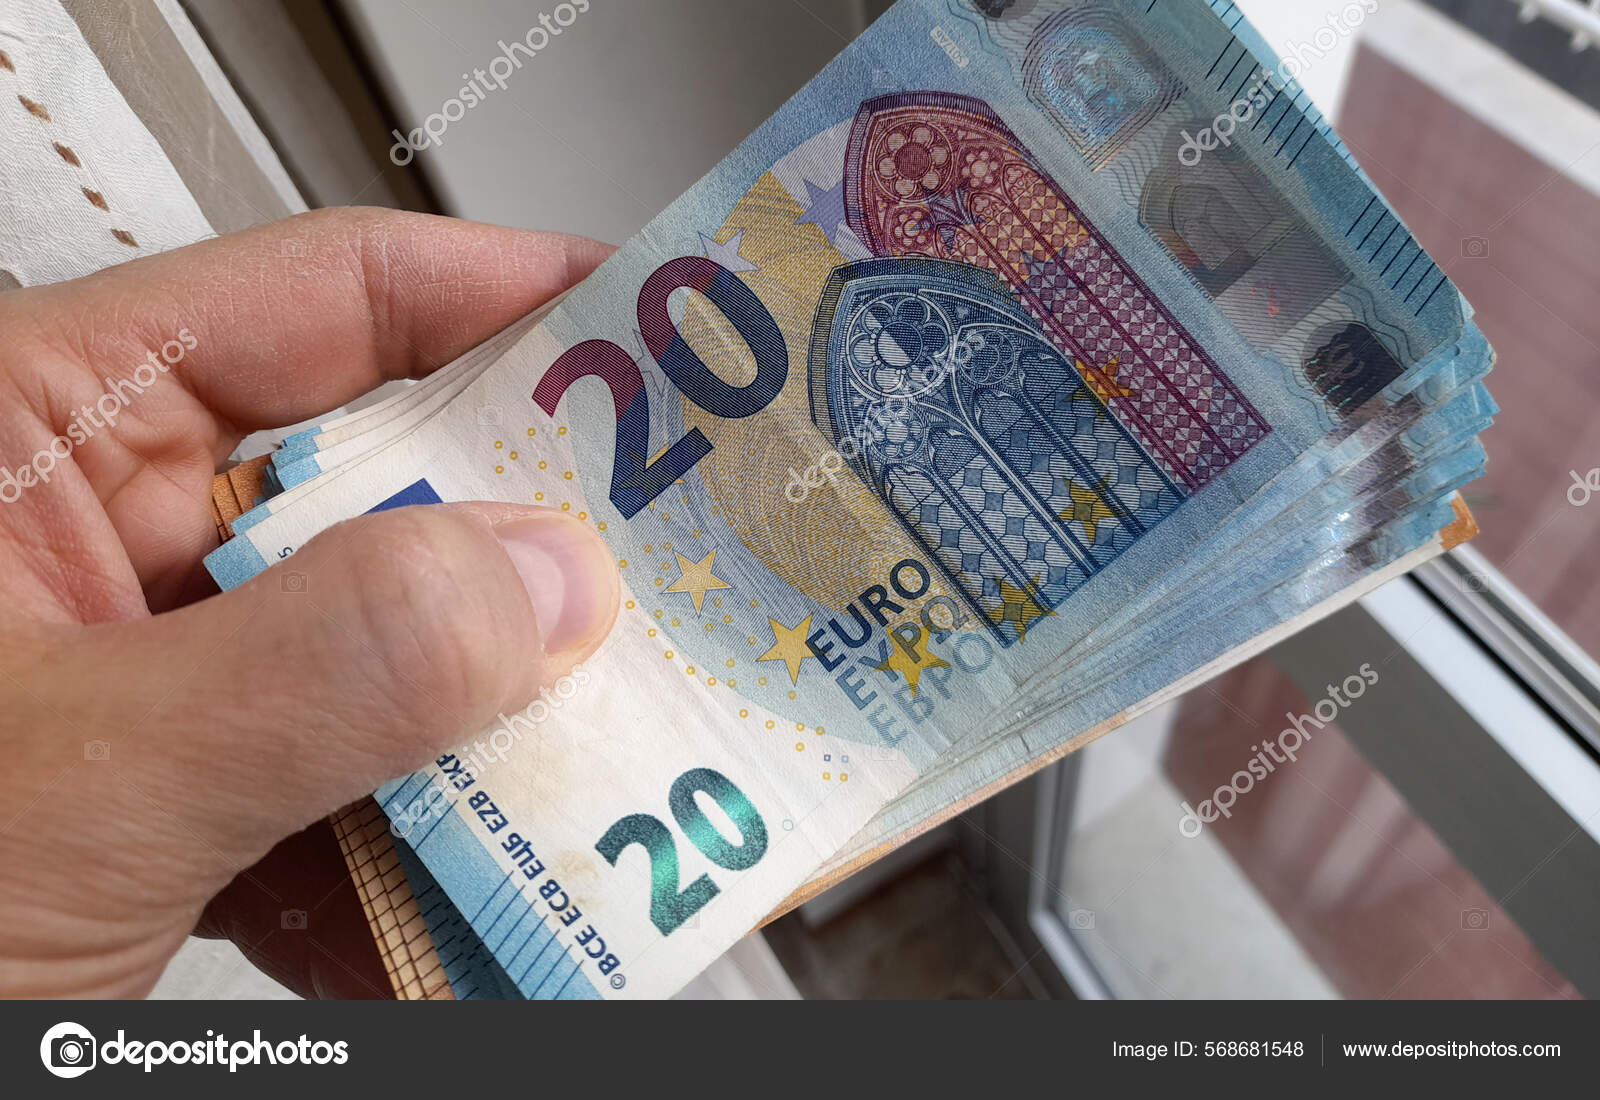 Wenn man 20 Euro oder mehr findet, sollte man lieber die Finger